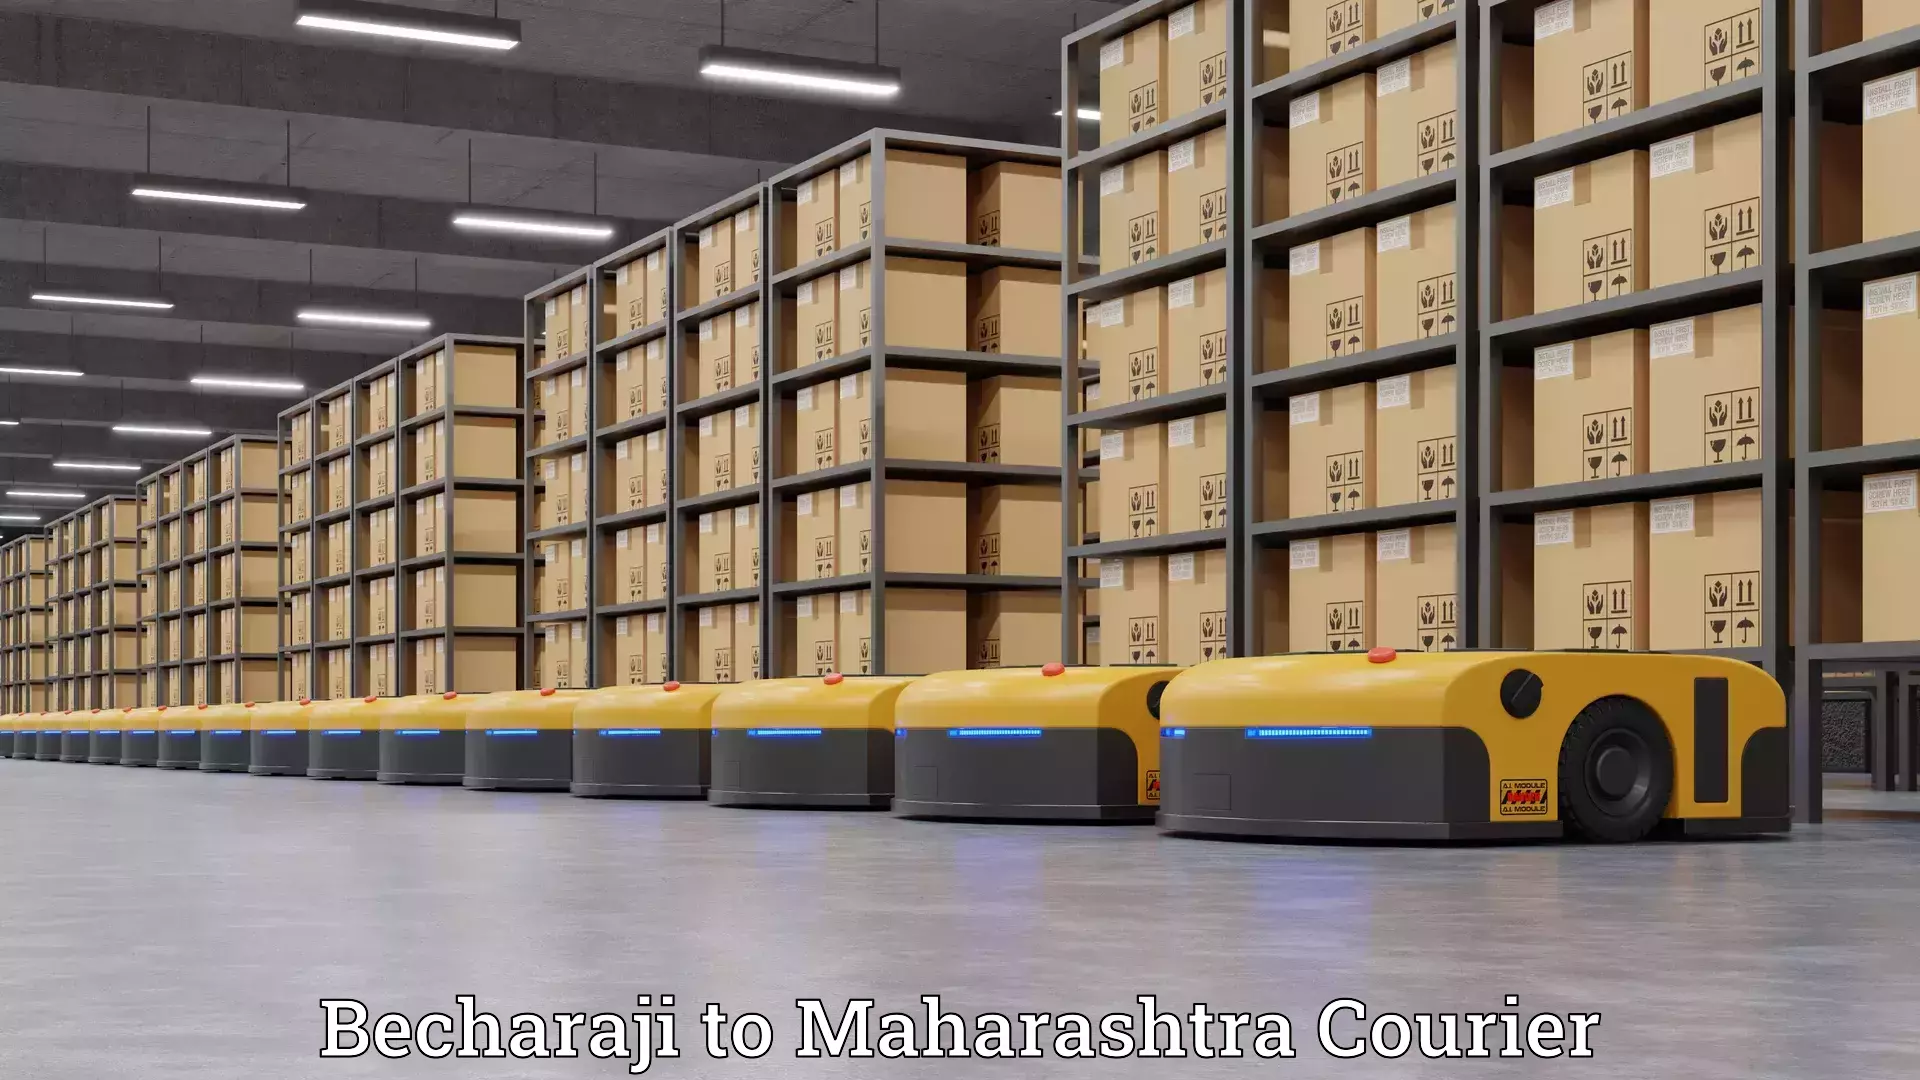 Professional relocation services Becharaji to Maharashtra